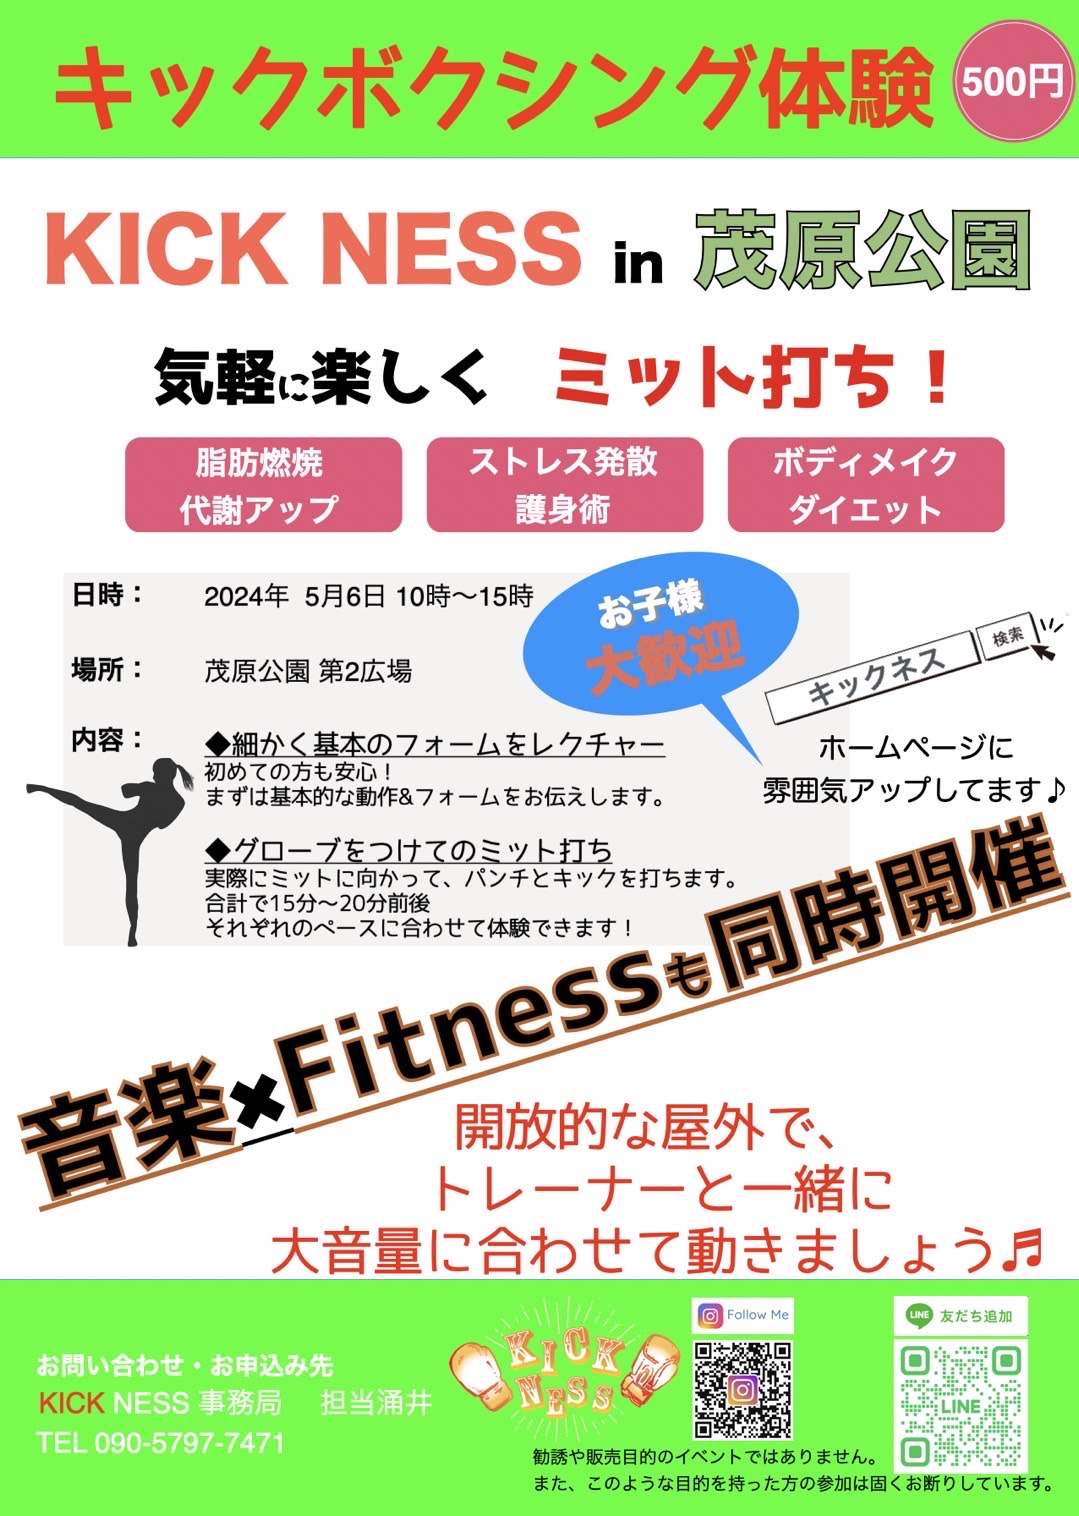 「KICK NESS in 茂原公園」が開催されます！